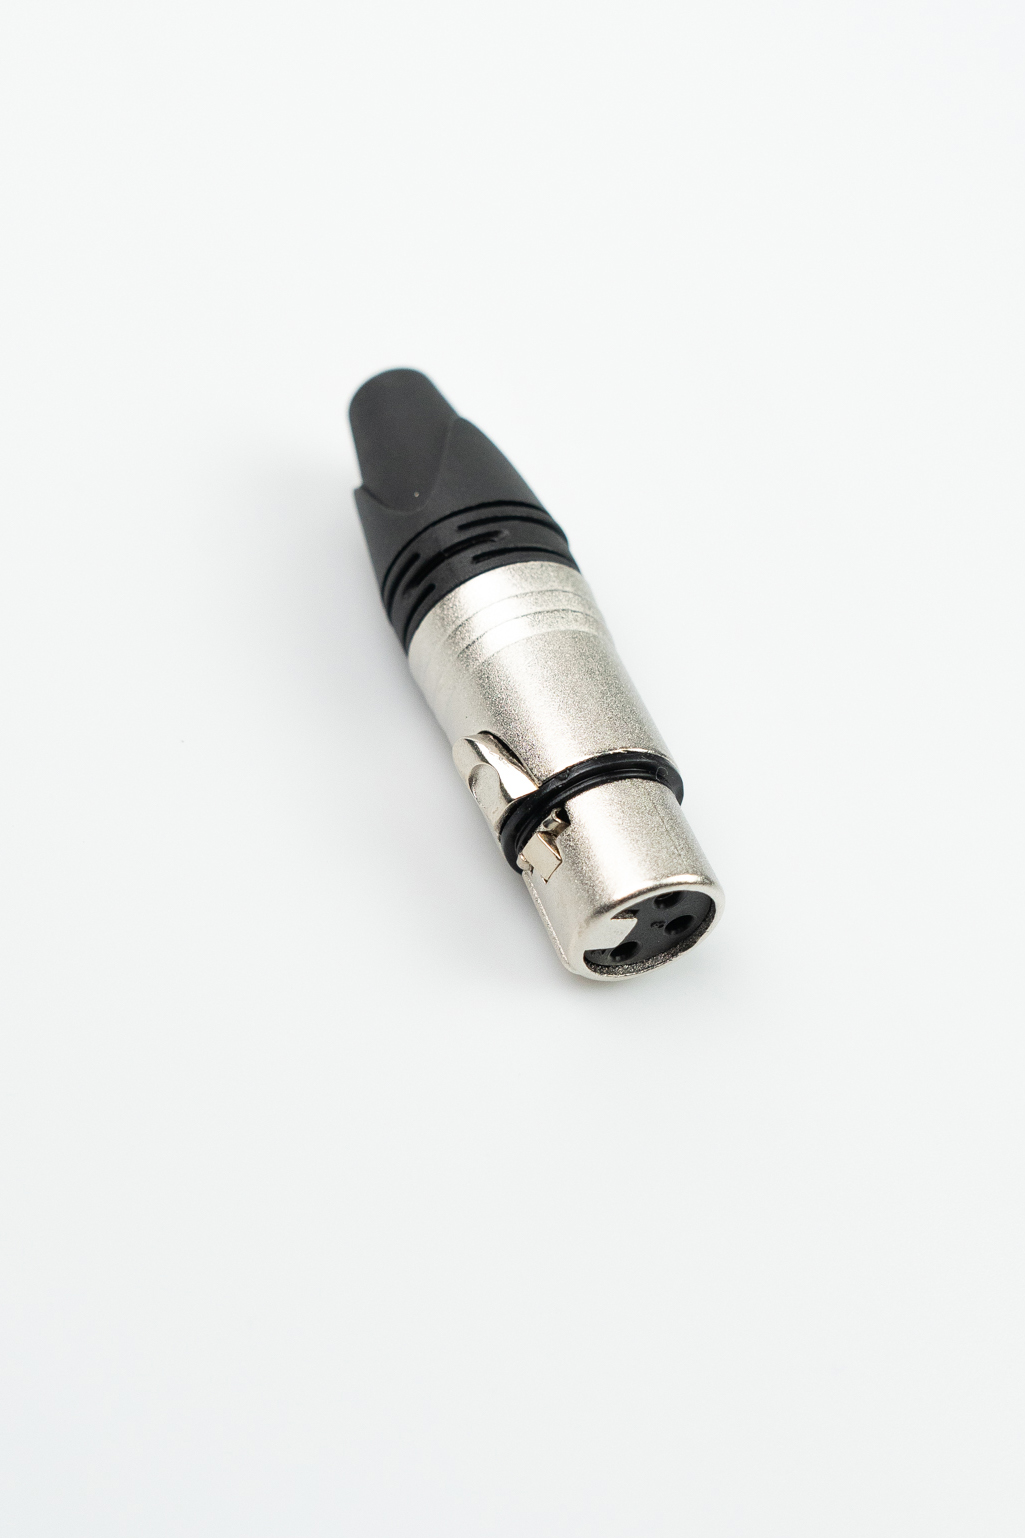 XSE XLR3F - кабельный разъем XLR мама, цвет - никель. Для кабеля 4-7 мм